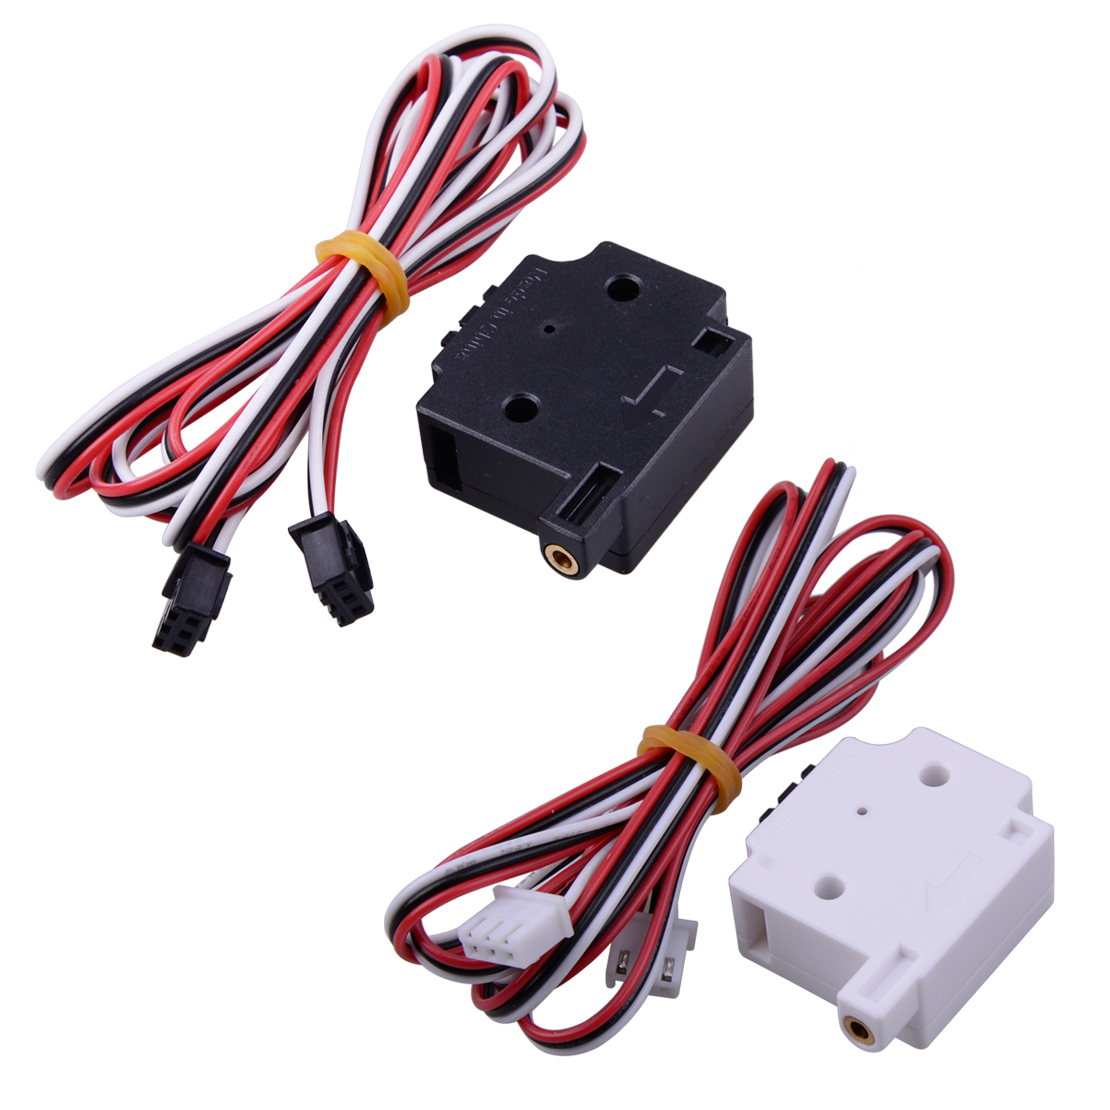 Für 3D Drucker 1.75mm Filament Sensor Material Erkennung Sensor Modul +Kabel NEU